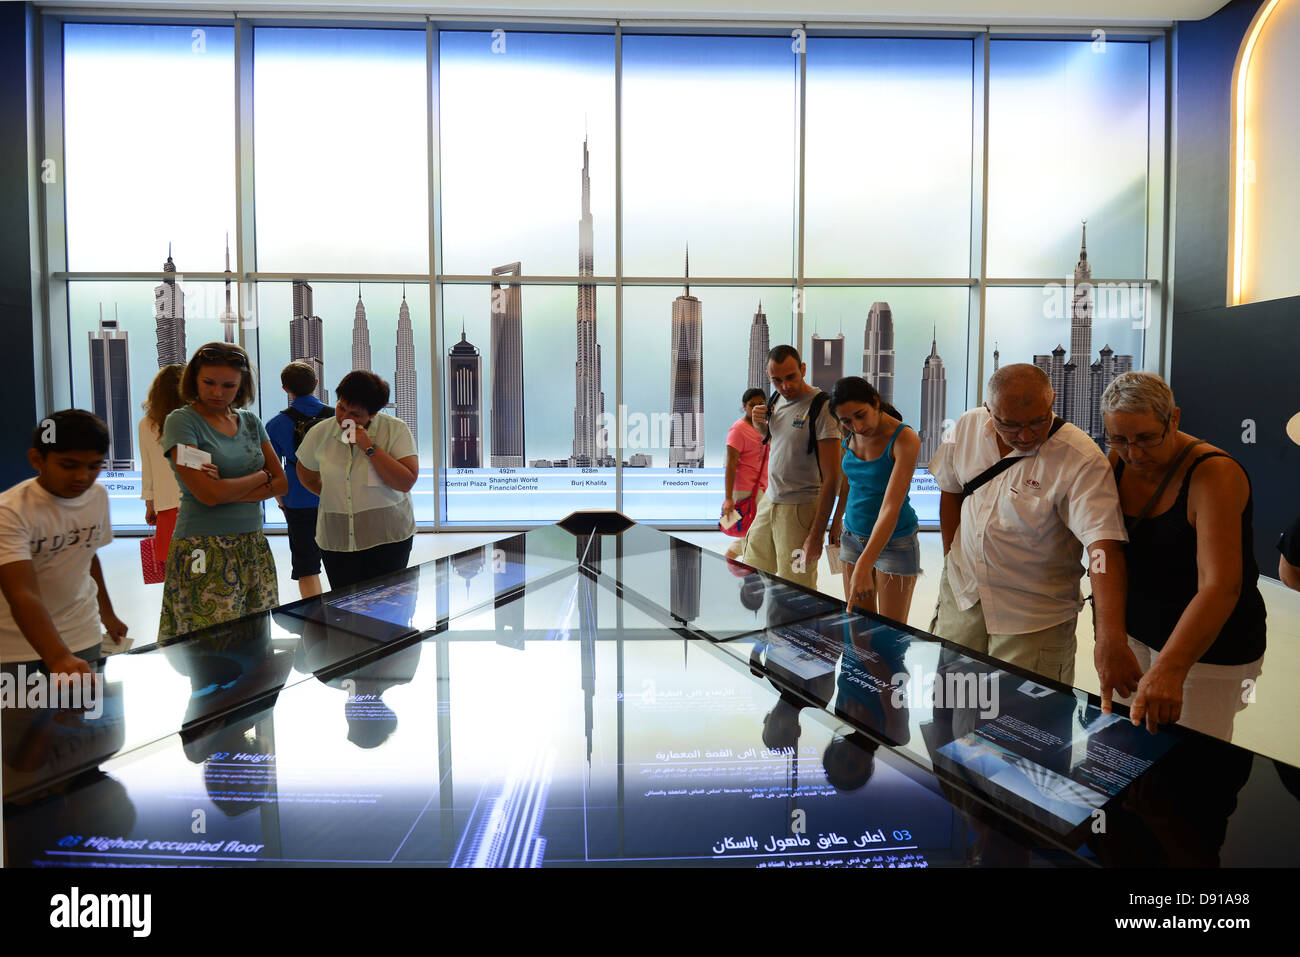 La construction de gratte-ciel Burj Khalifa, attendre les touristes pour aller en haut de la tour Burj Khalifa, Dubai, Émirats Arabes Unis Banque D'Images